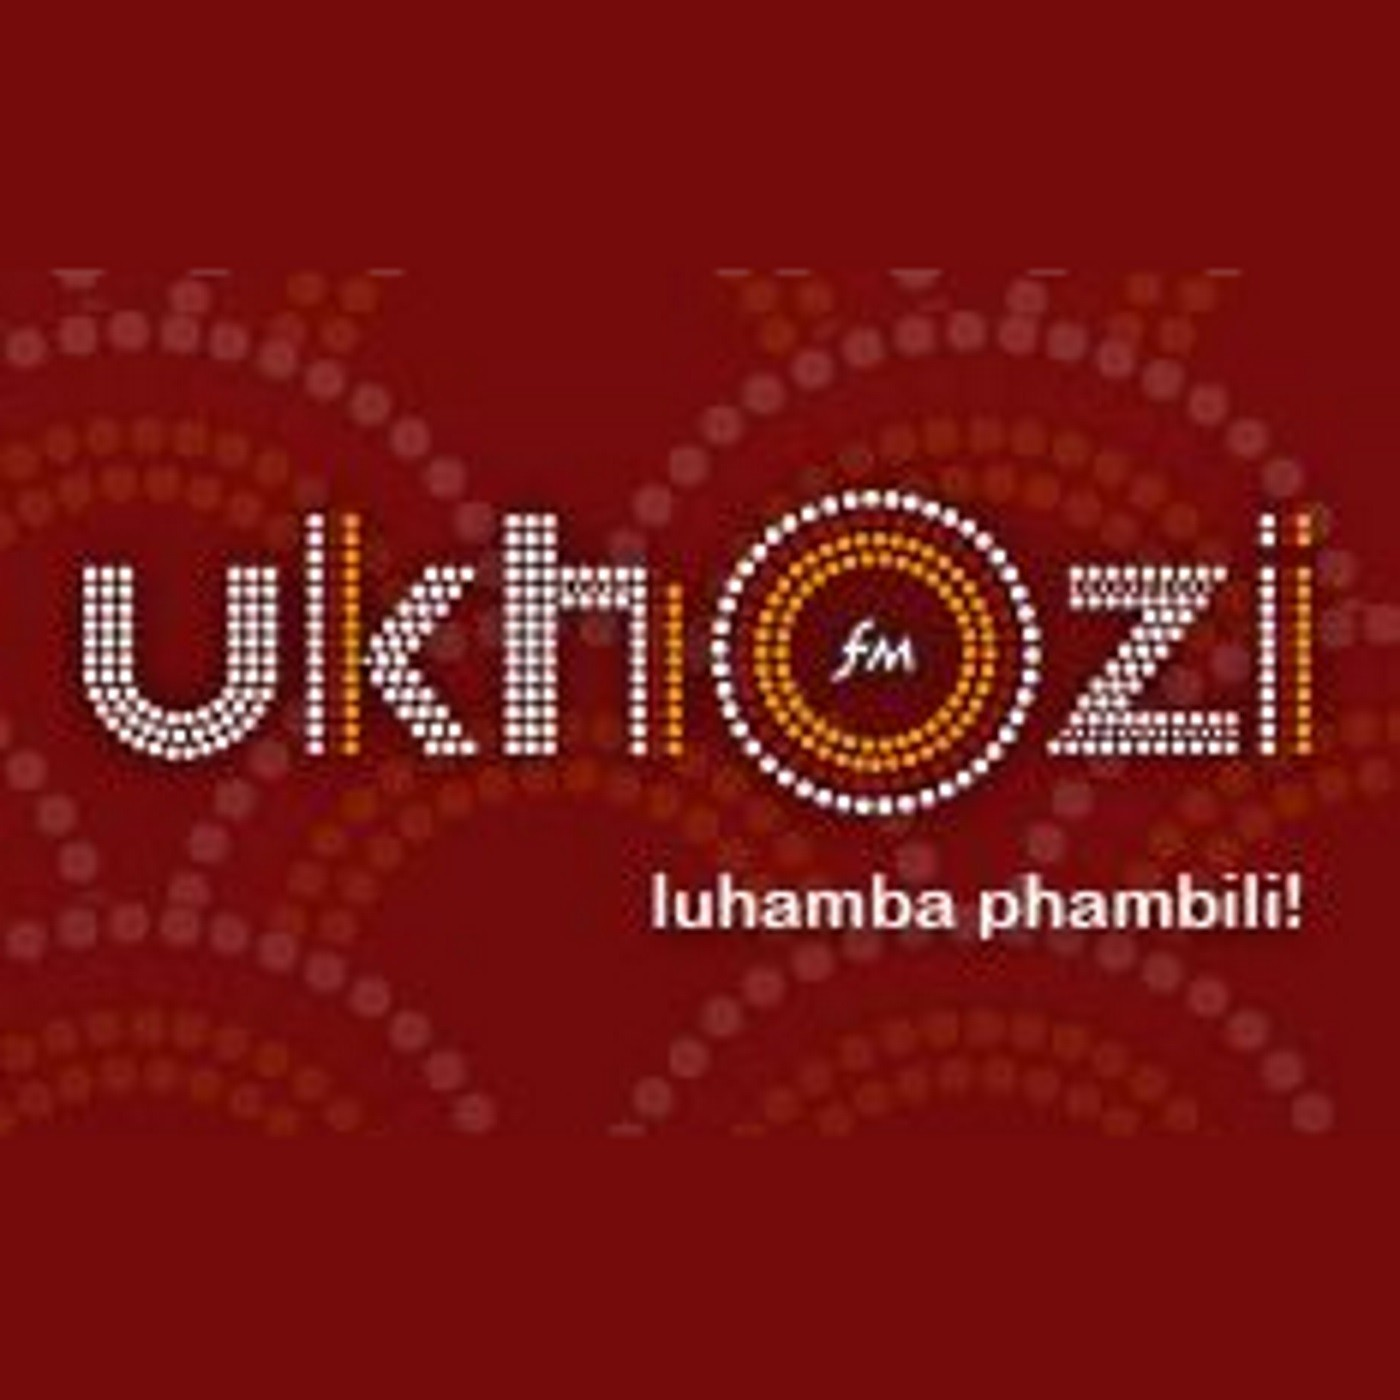 Hlaziya ipolitiki no Nhlanhla Mtaka